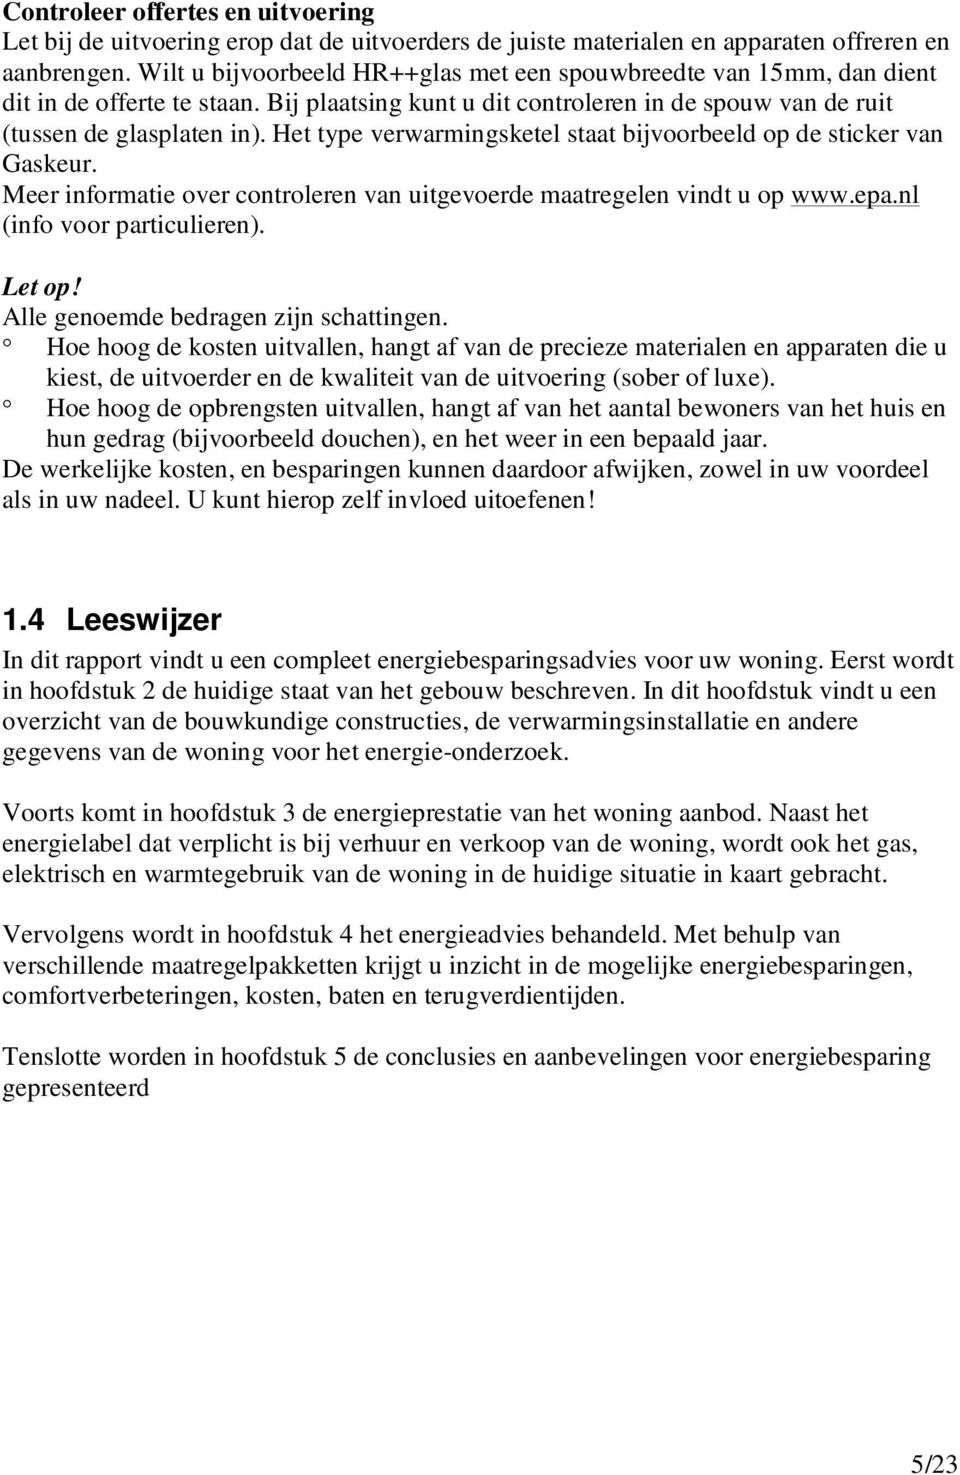 Het type verwarmingsketel staat bijvoorbeeld op de sticker van Gaskeur. Meer informatie over controleren van uitgevoerde maatregelen vindt u op www.epa.nl (info voor particulieren). Let op!